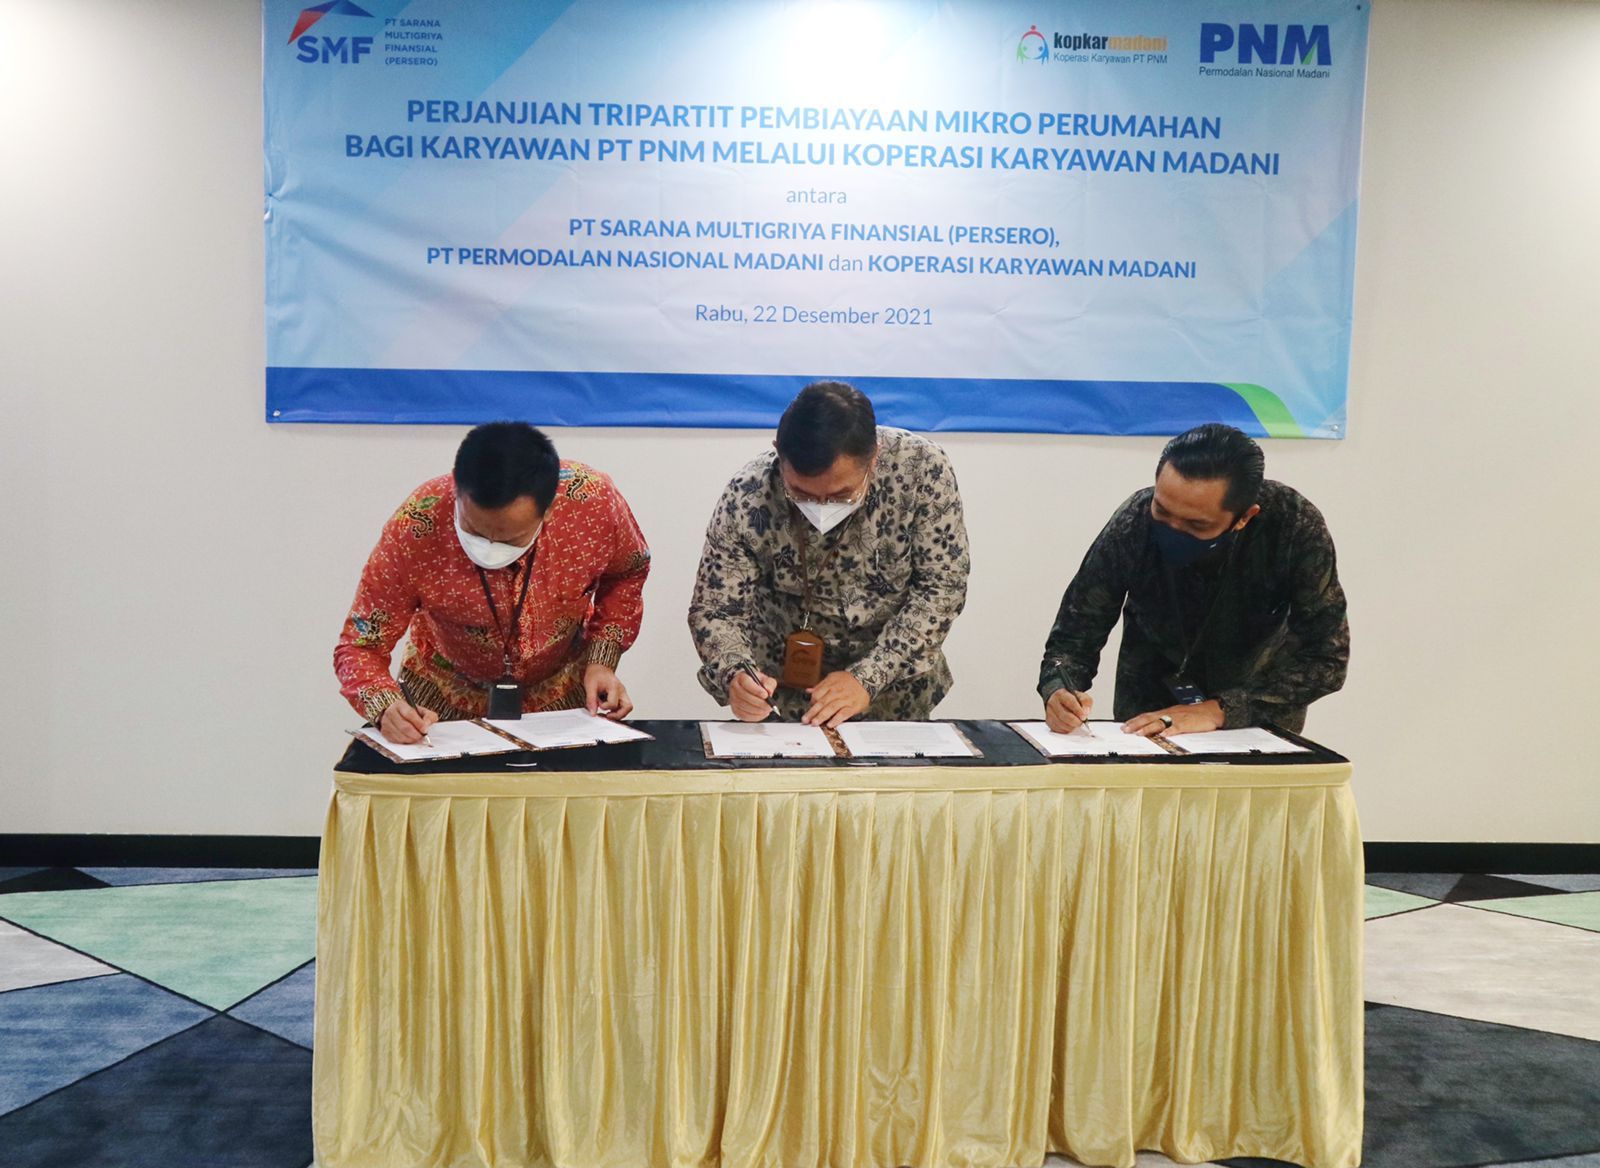 PT Permodalan Nasional Madani (PNM) dan PT Sarana Multigriya Finansial (Persero) atau SMF berkolaborasi dalam guna mendorong pembiayaan mikro perumahan dan memberikan fasilitas pembiayaan bagi karyawan PNM yang tergabung dengan Koperasi Karyawan Madani (KopKarMadani).